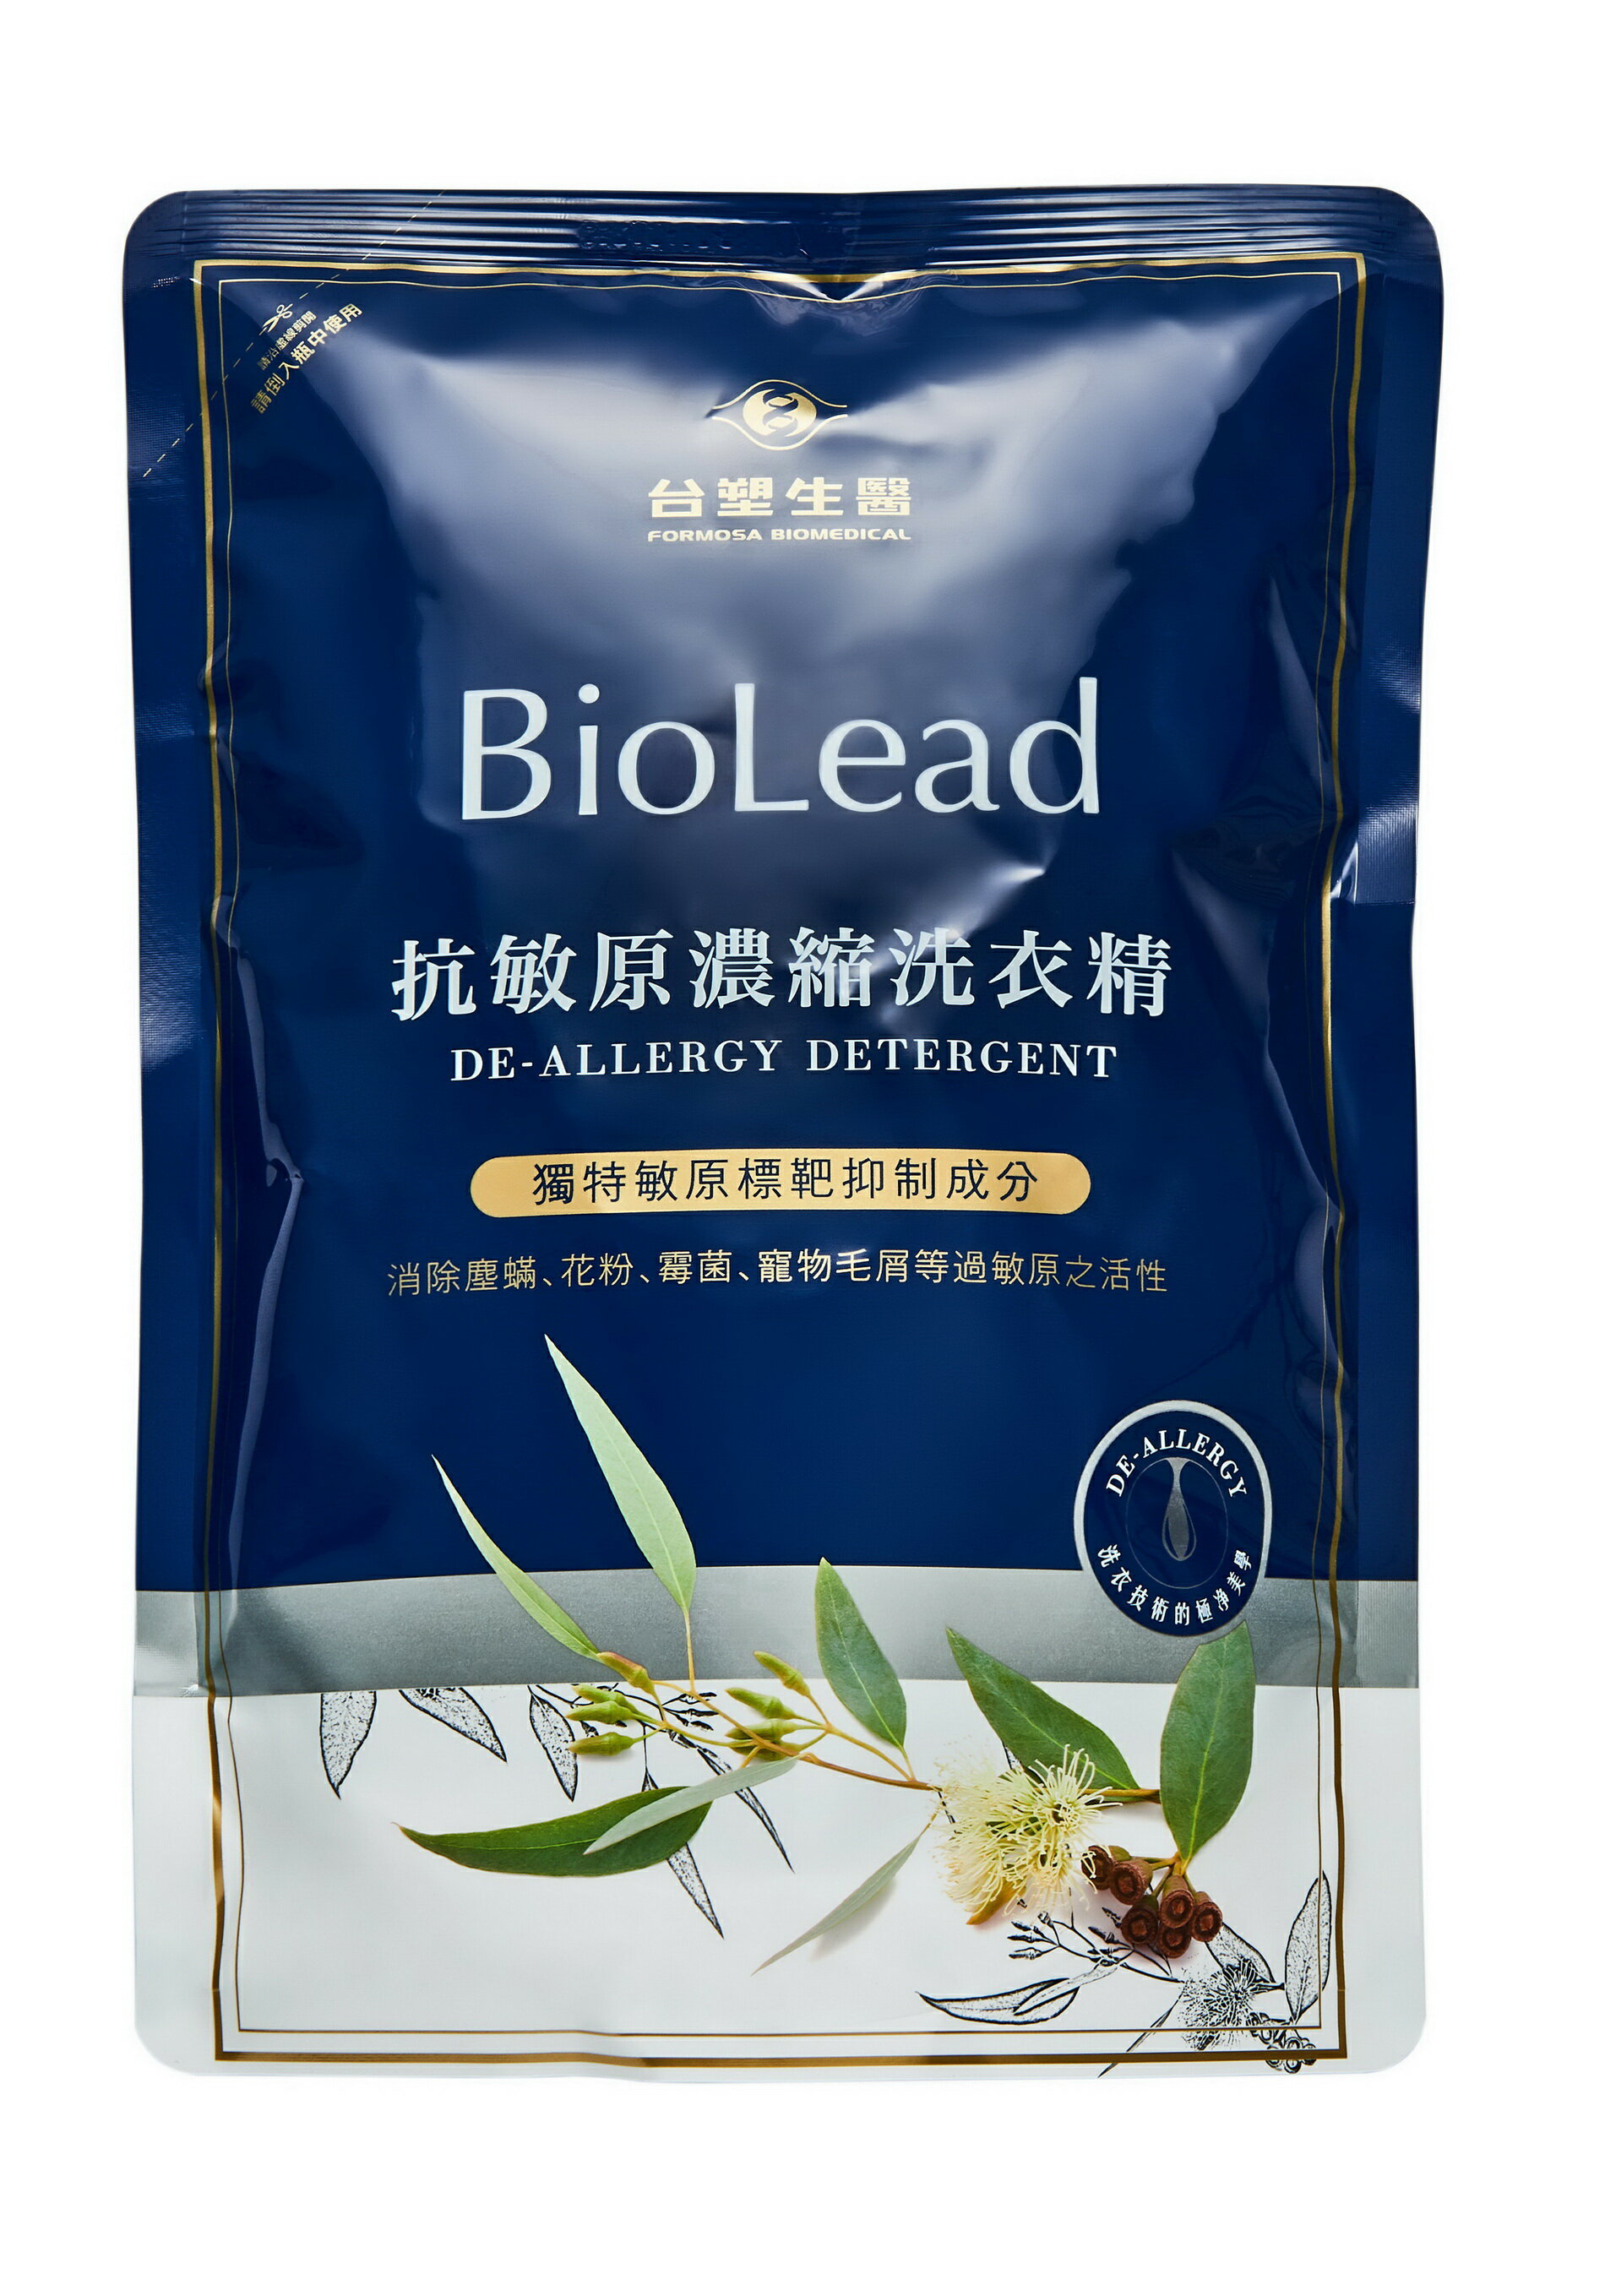 台塑生醫 BioLead 抗敏原洗衣精 1.8kg環保補充包【購購購】